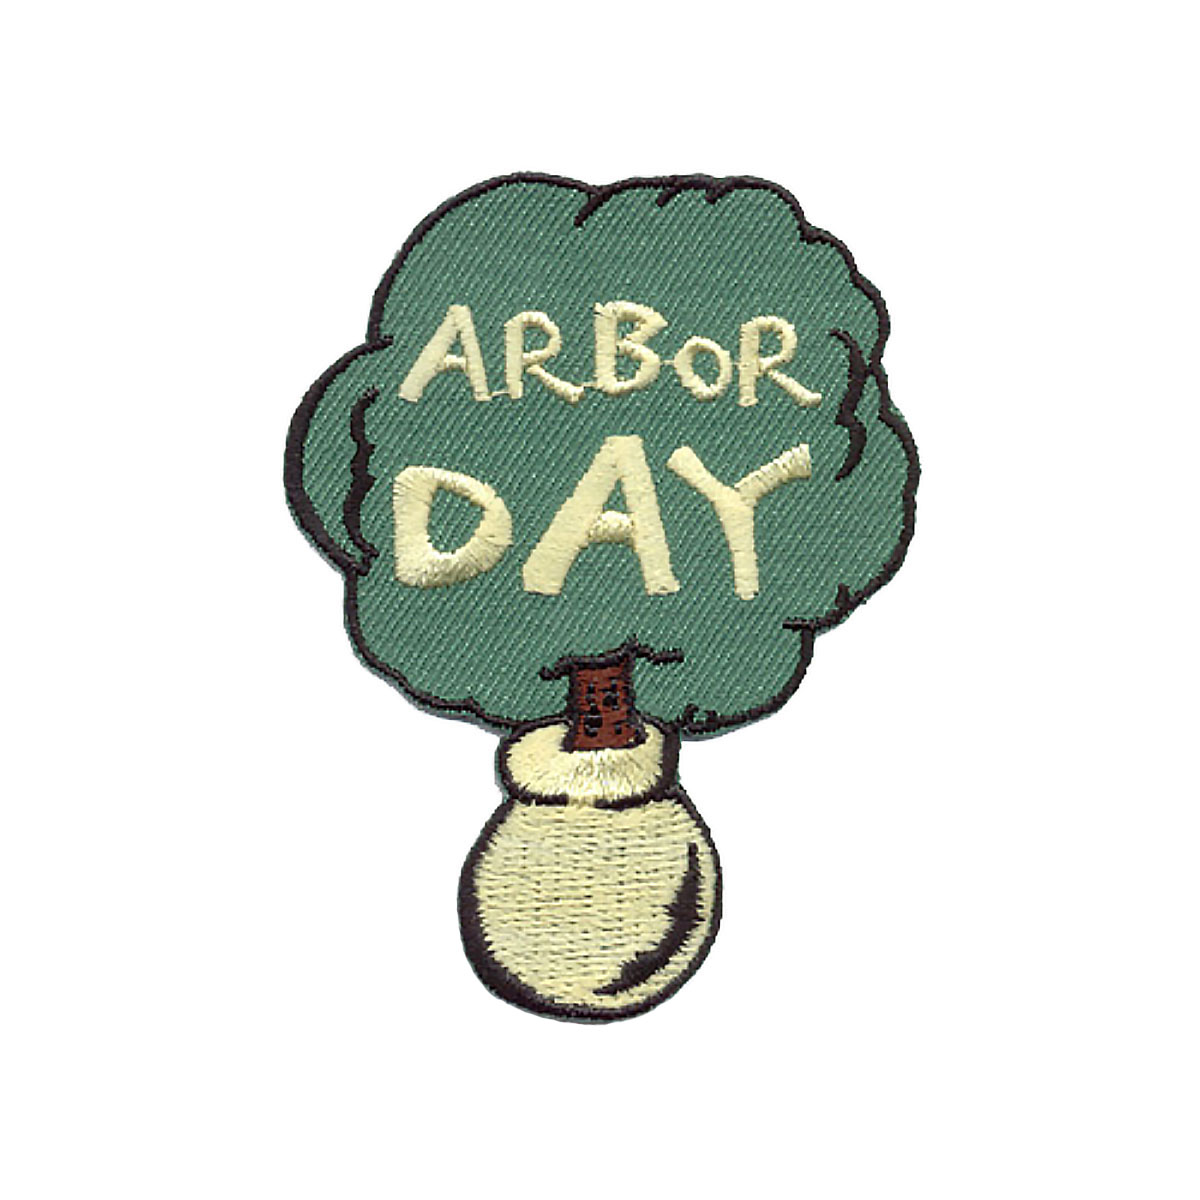 Arbor Day - W